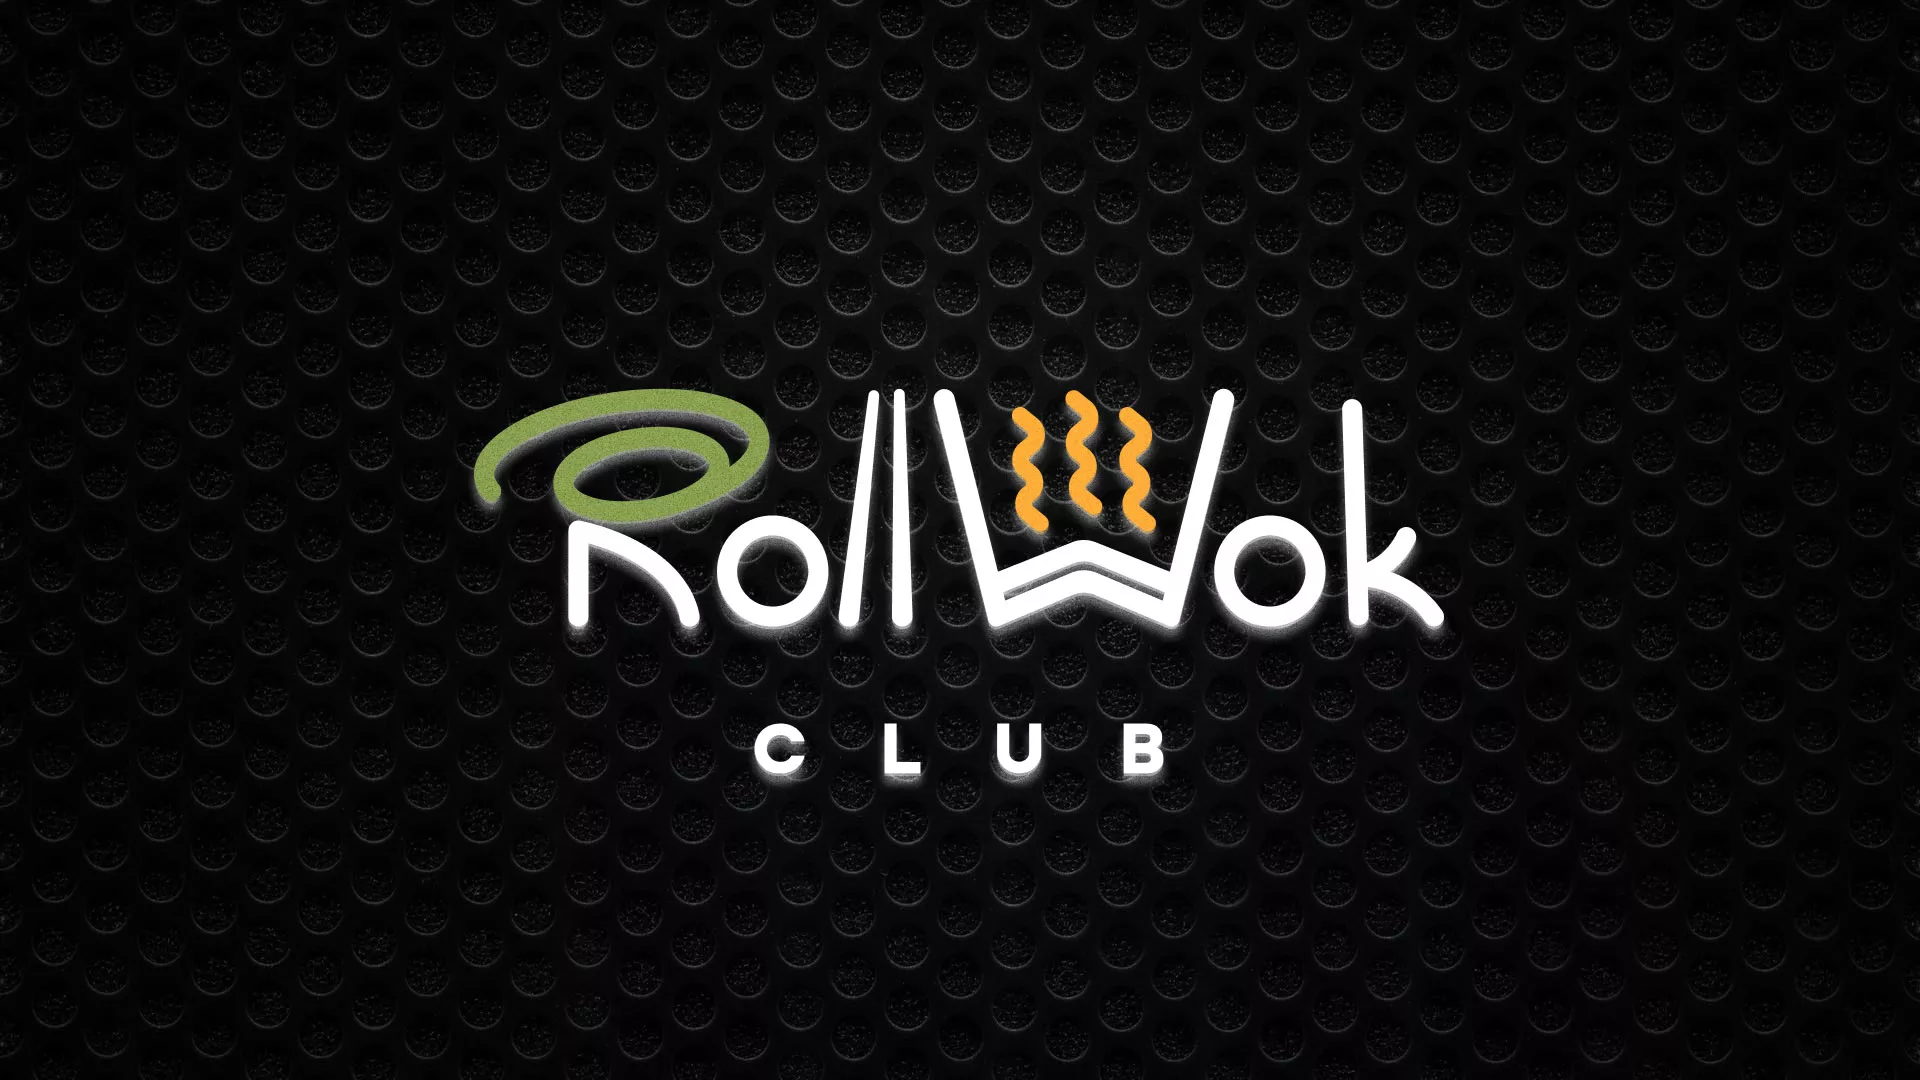 Брендирование торговых точек суши-бара «Roll Wok Club» в Ломоносове